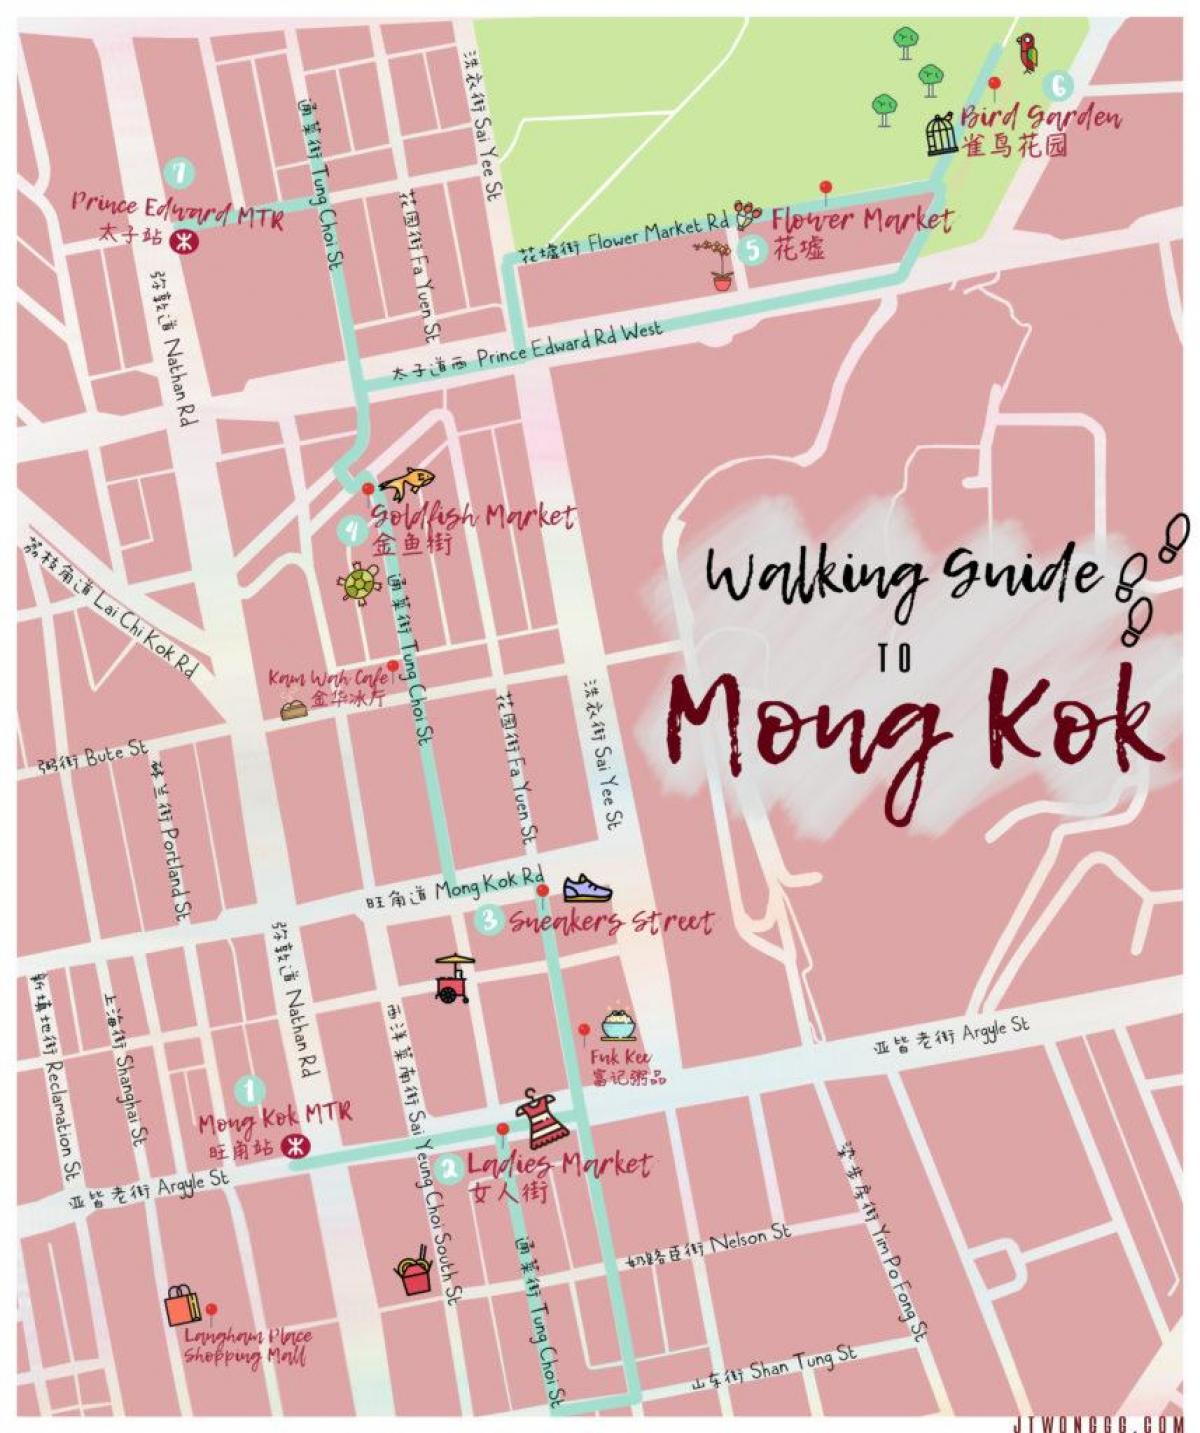 քարտեզ Монг Անանուխի hong Kong